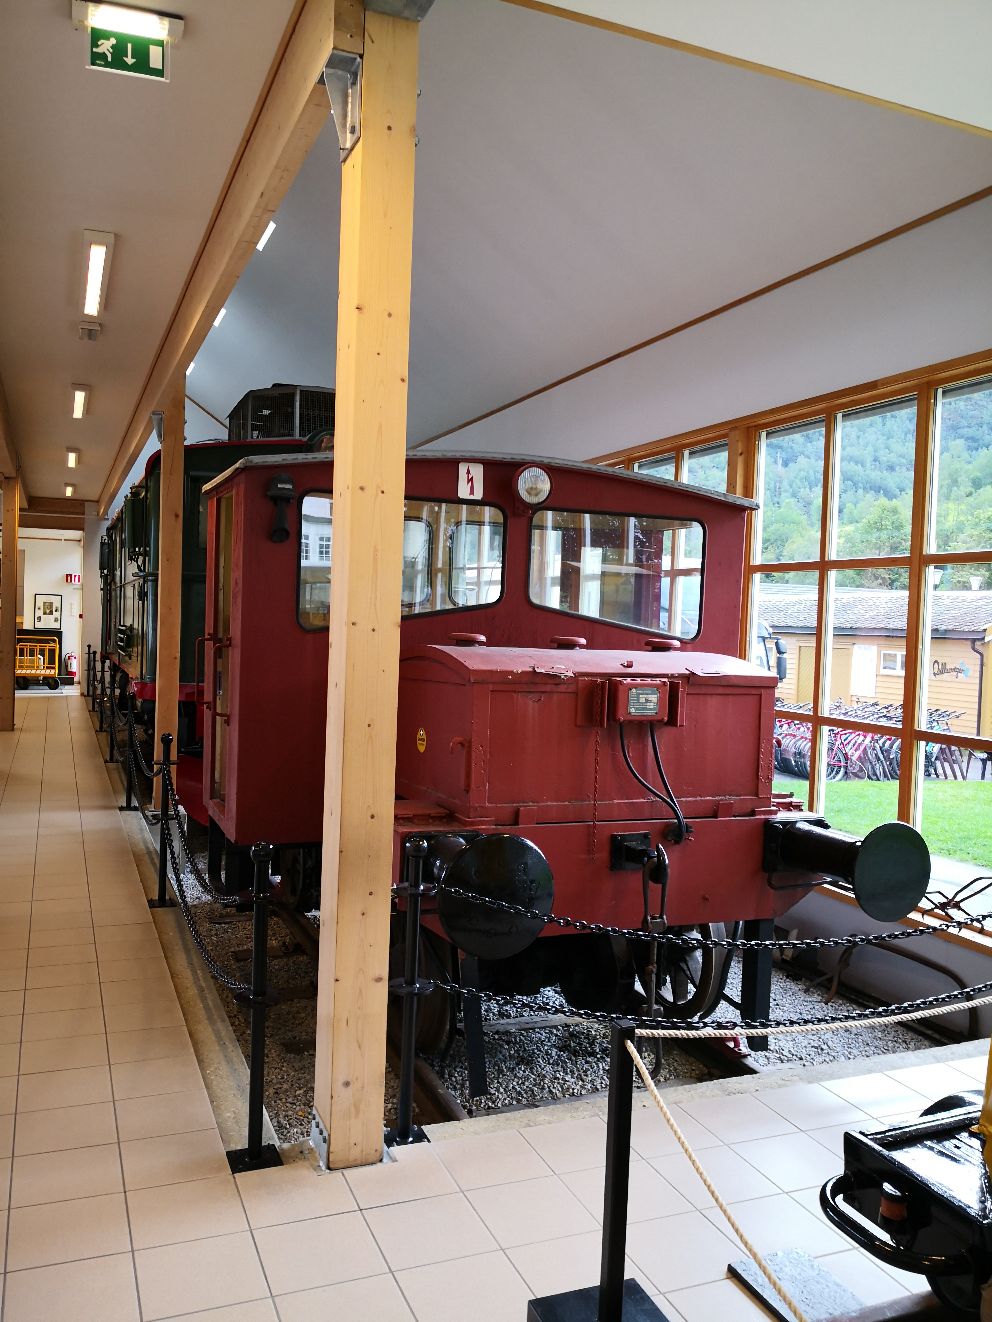 弗洛姆火车博物馆 地方不大但火车主体很有趣